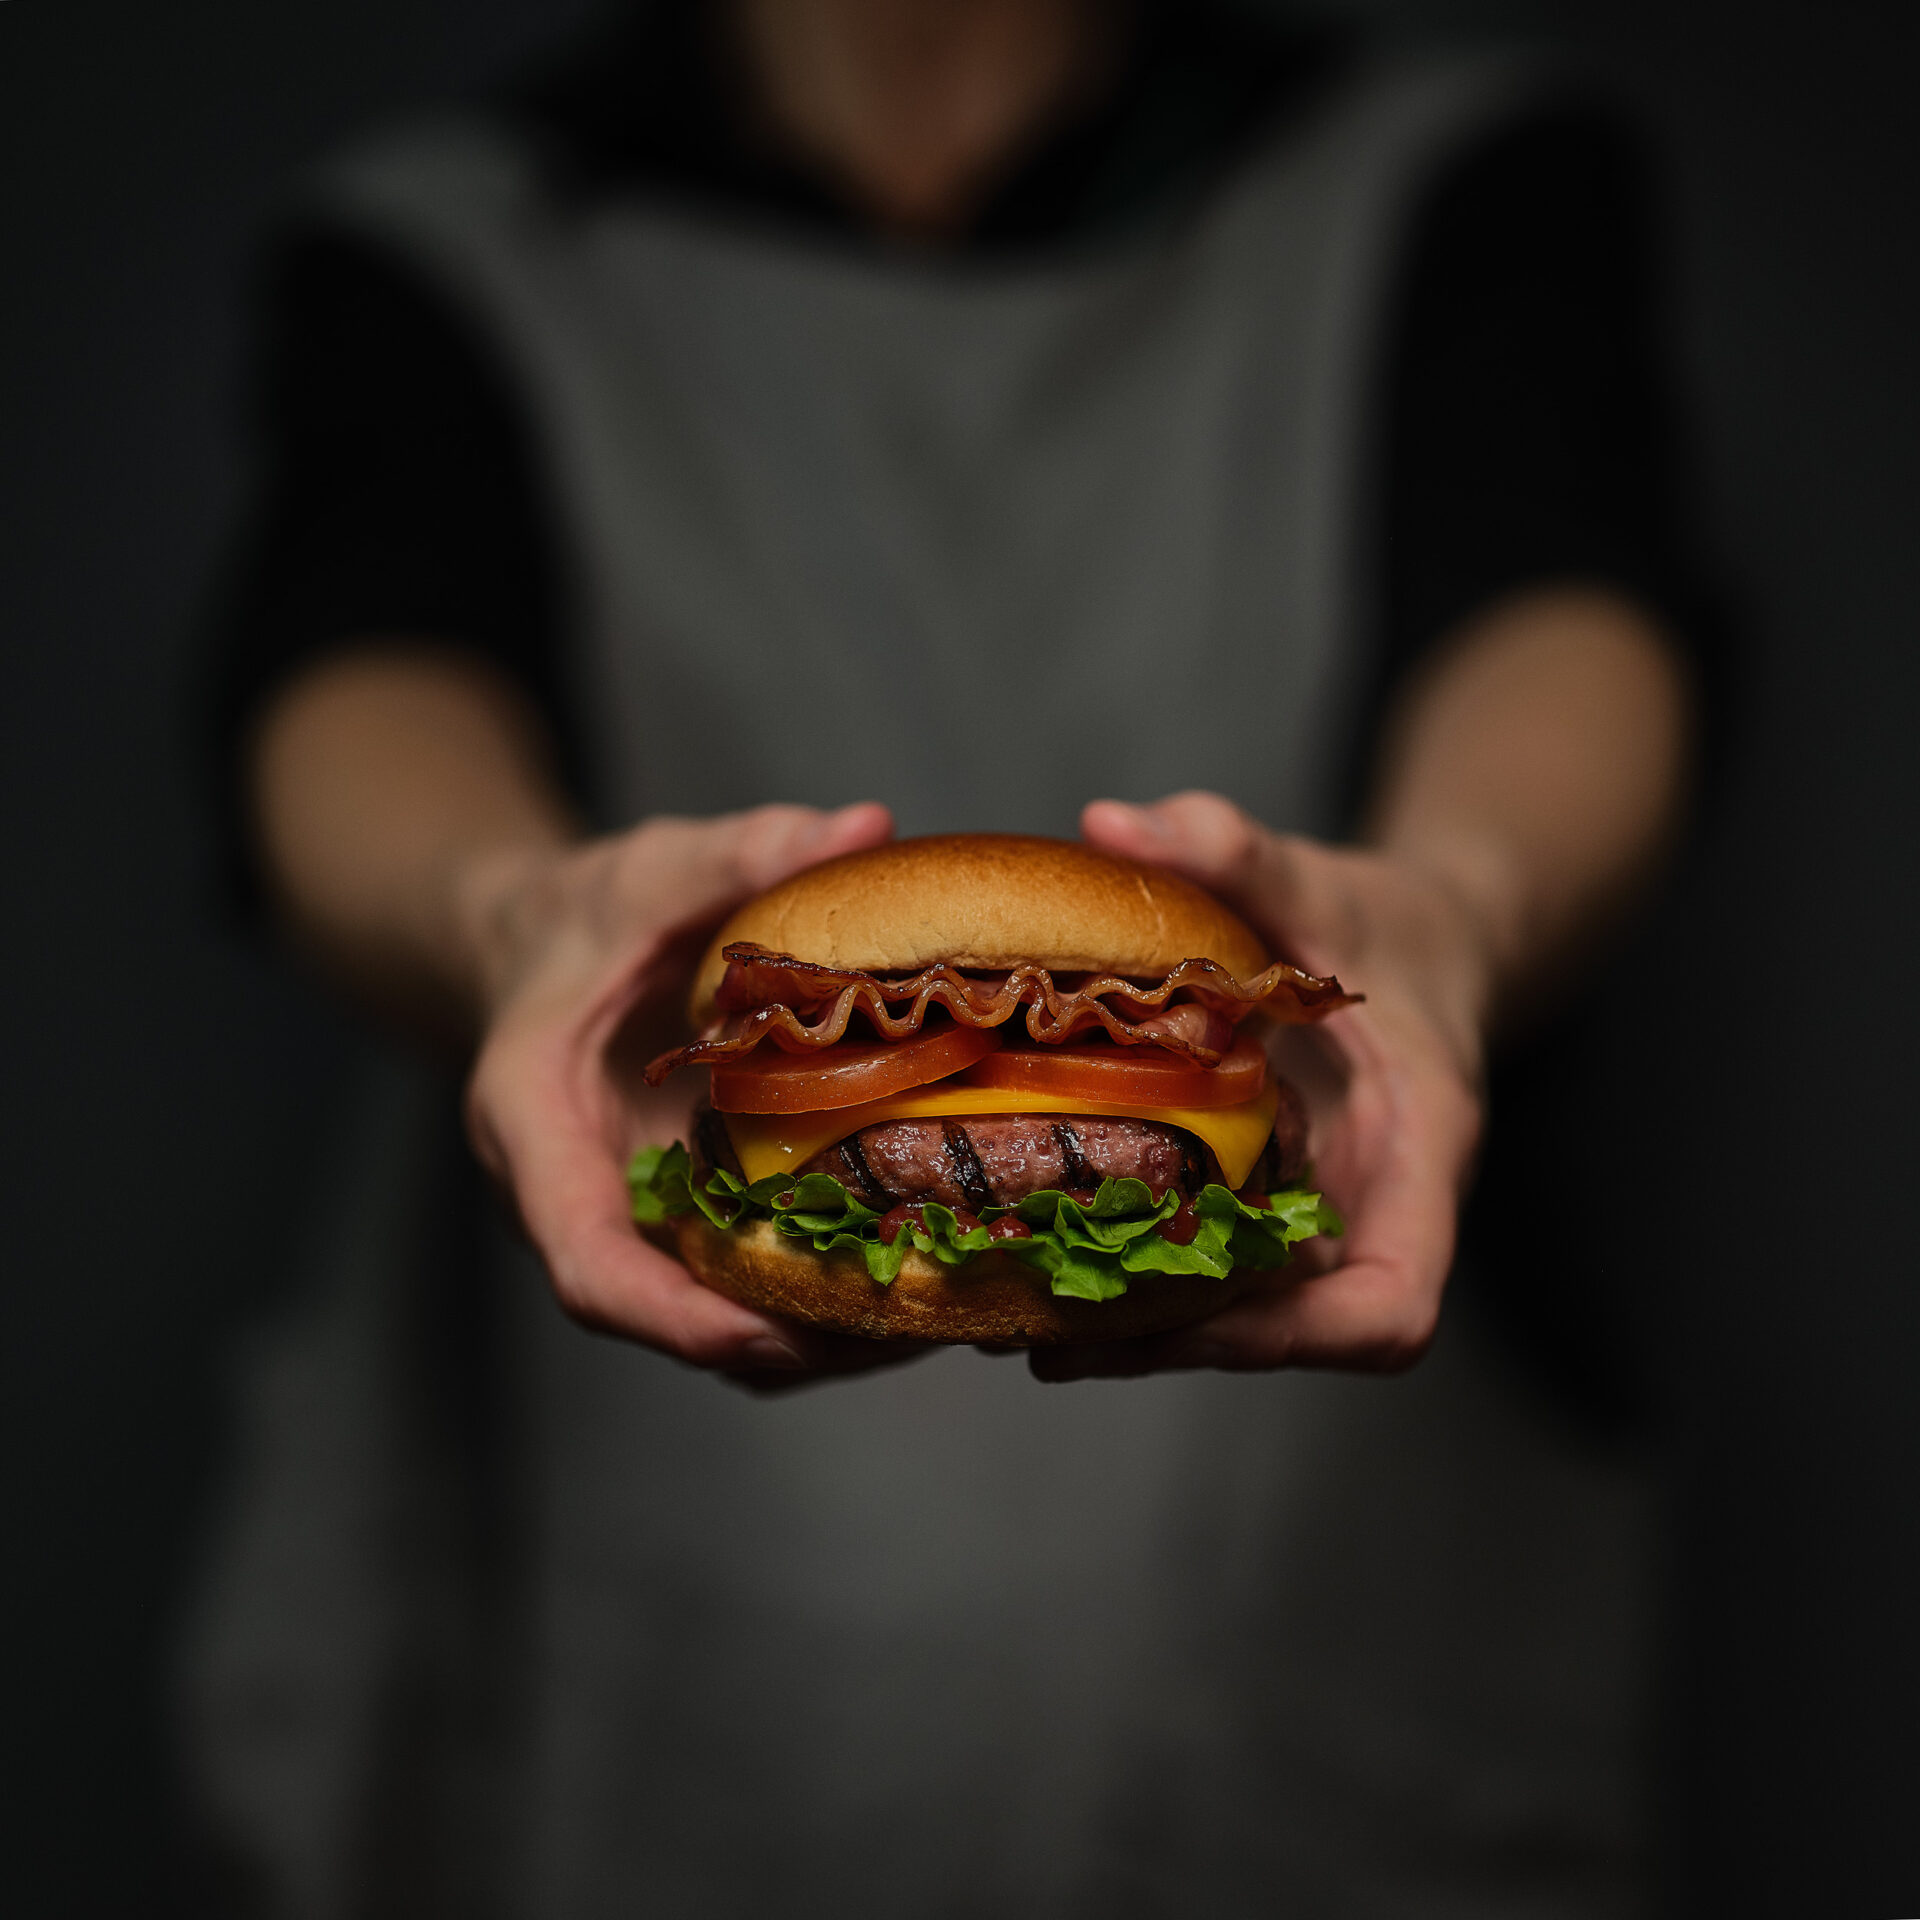 Home economist & food stylist Madrid Burger foodporn